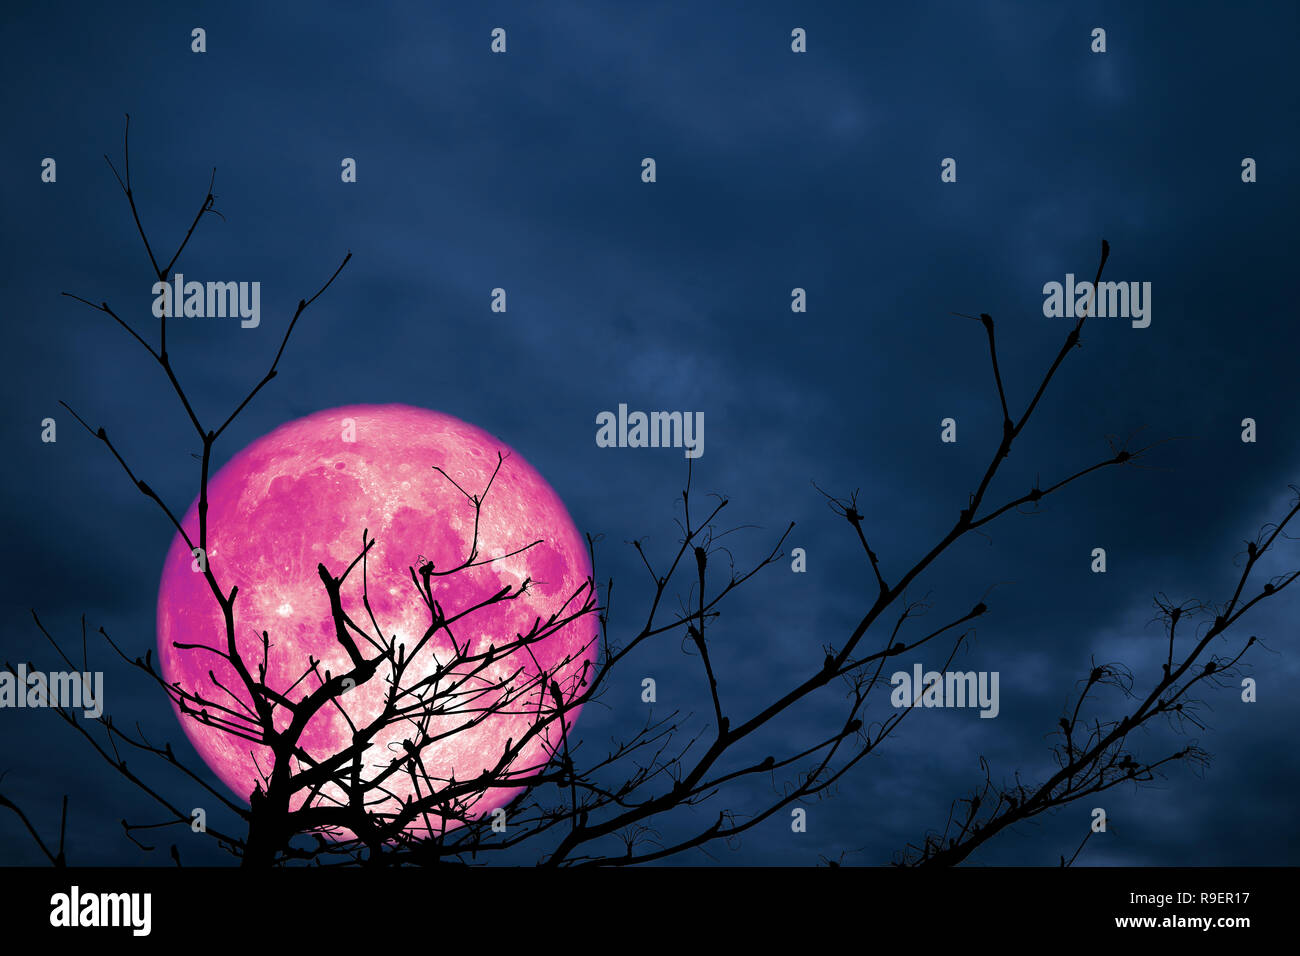 Super rosa Mond zurück silhouette Zweig Baum nacht Cloud, Elemente dieses Bild von der NASA eingerichtet Stockfoto